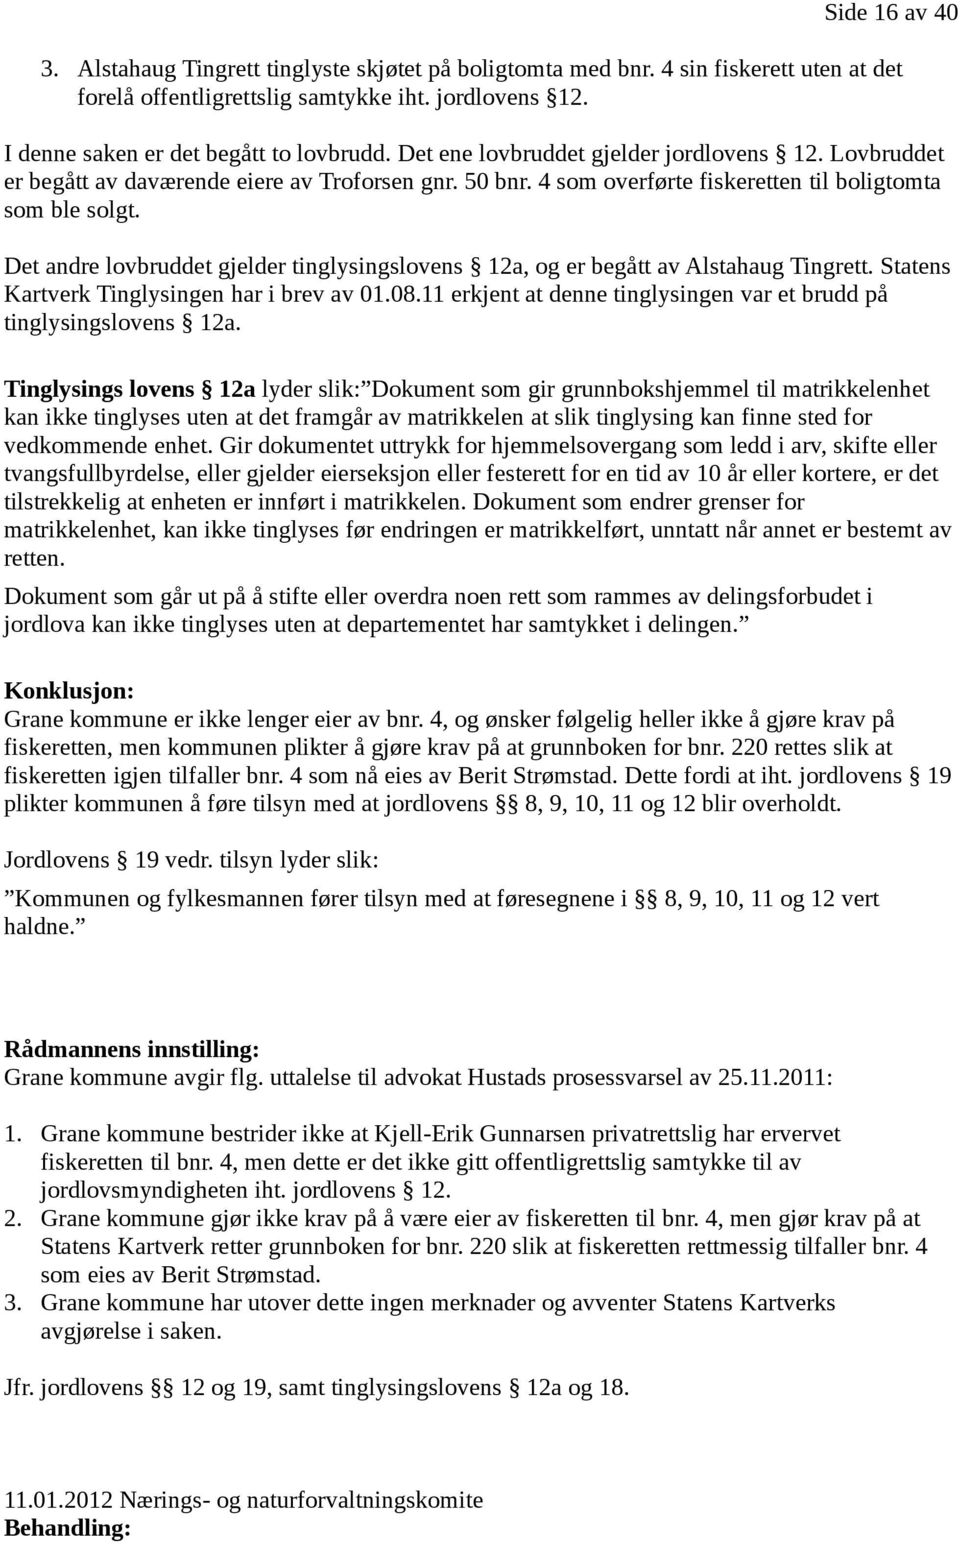 Det andre lovbruddet gjelder tinglysingslovens 12a, og er begått av Alstahaug Tingrett. Statens Kartverk Tinglysingen har i brev av 01.08.